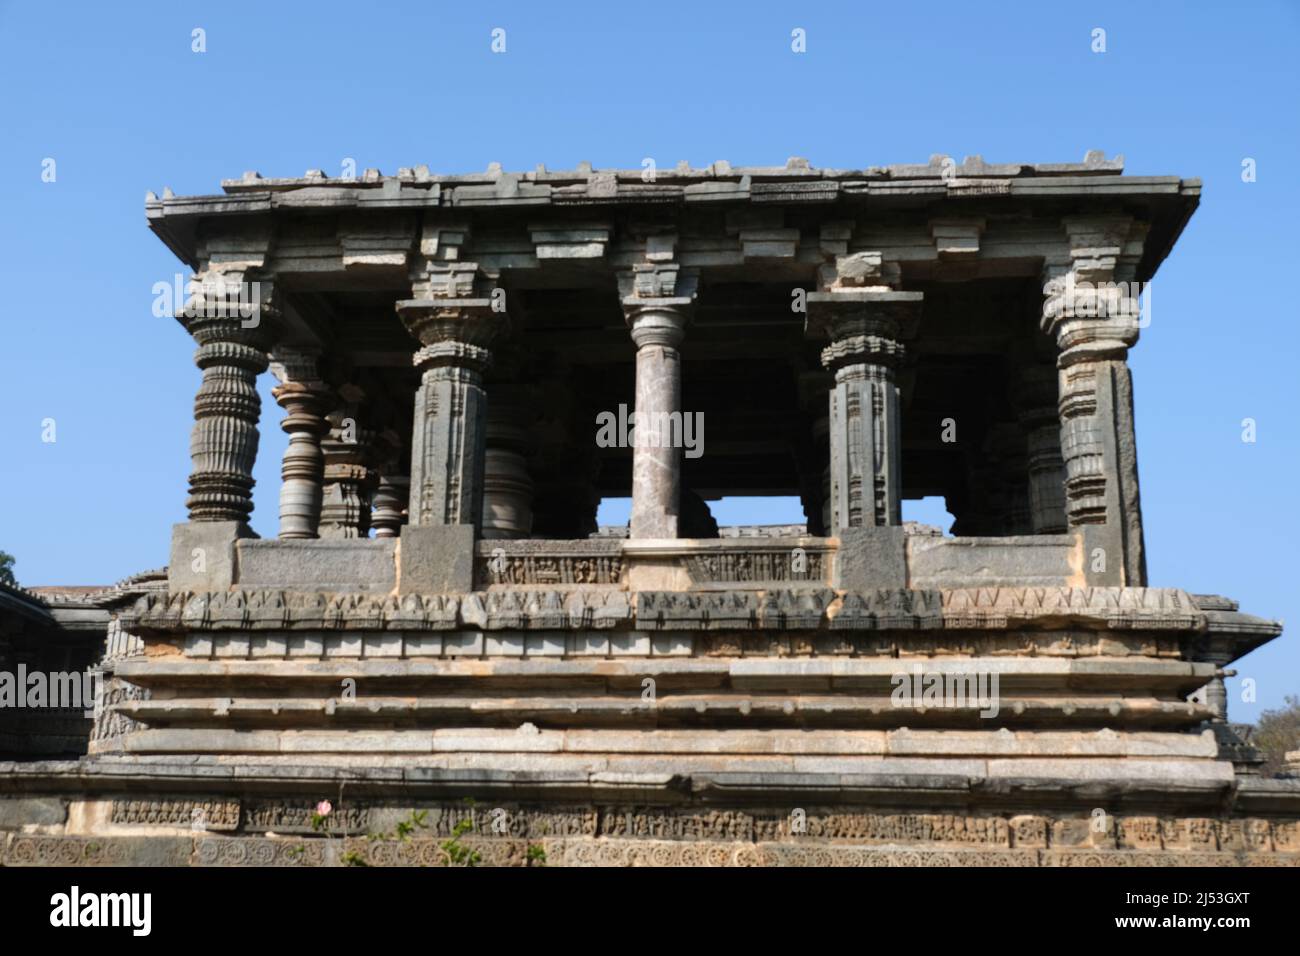 Ancien temple Hoysaleswara Hindou complexe à Halebidu, développé sous la domination de l'empire Hoysala entre les 11th et 14th siècles. Banque D'Images